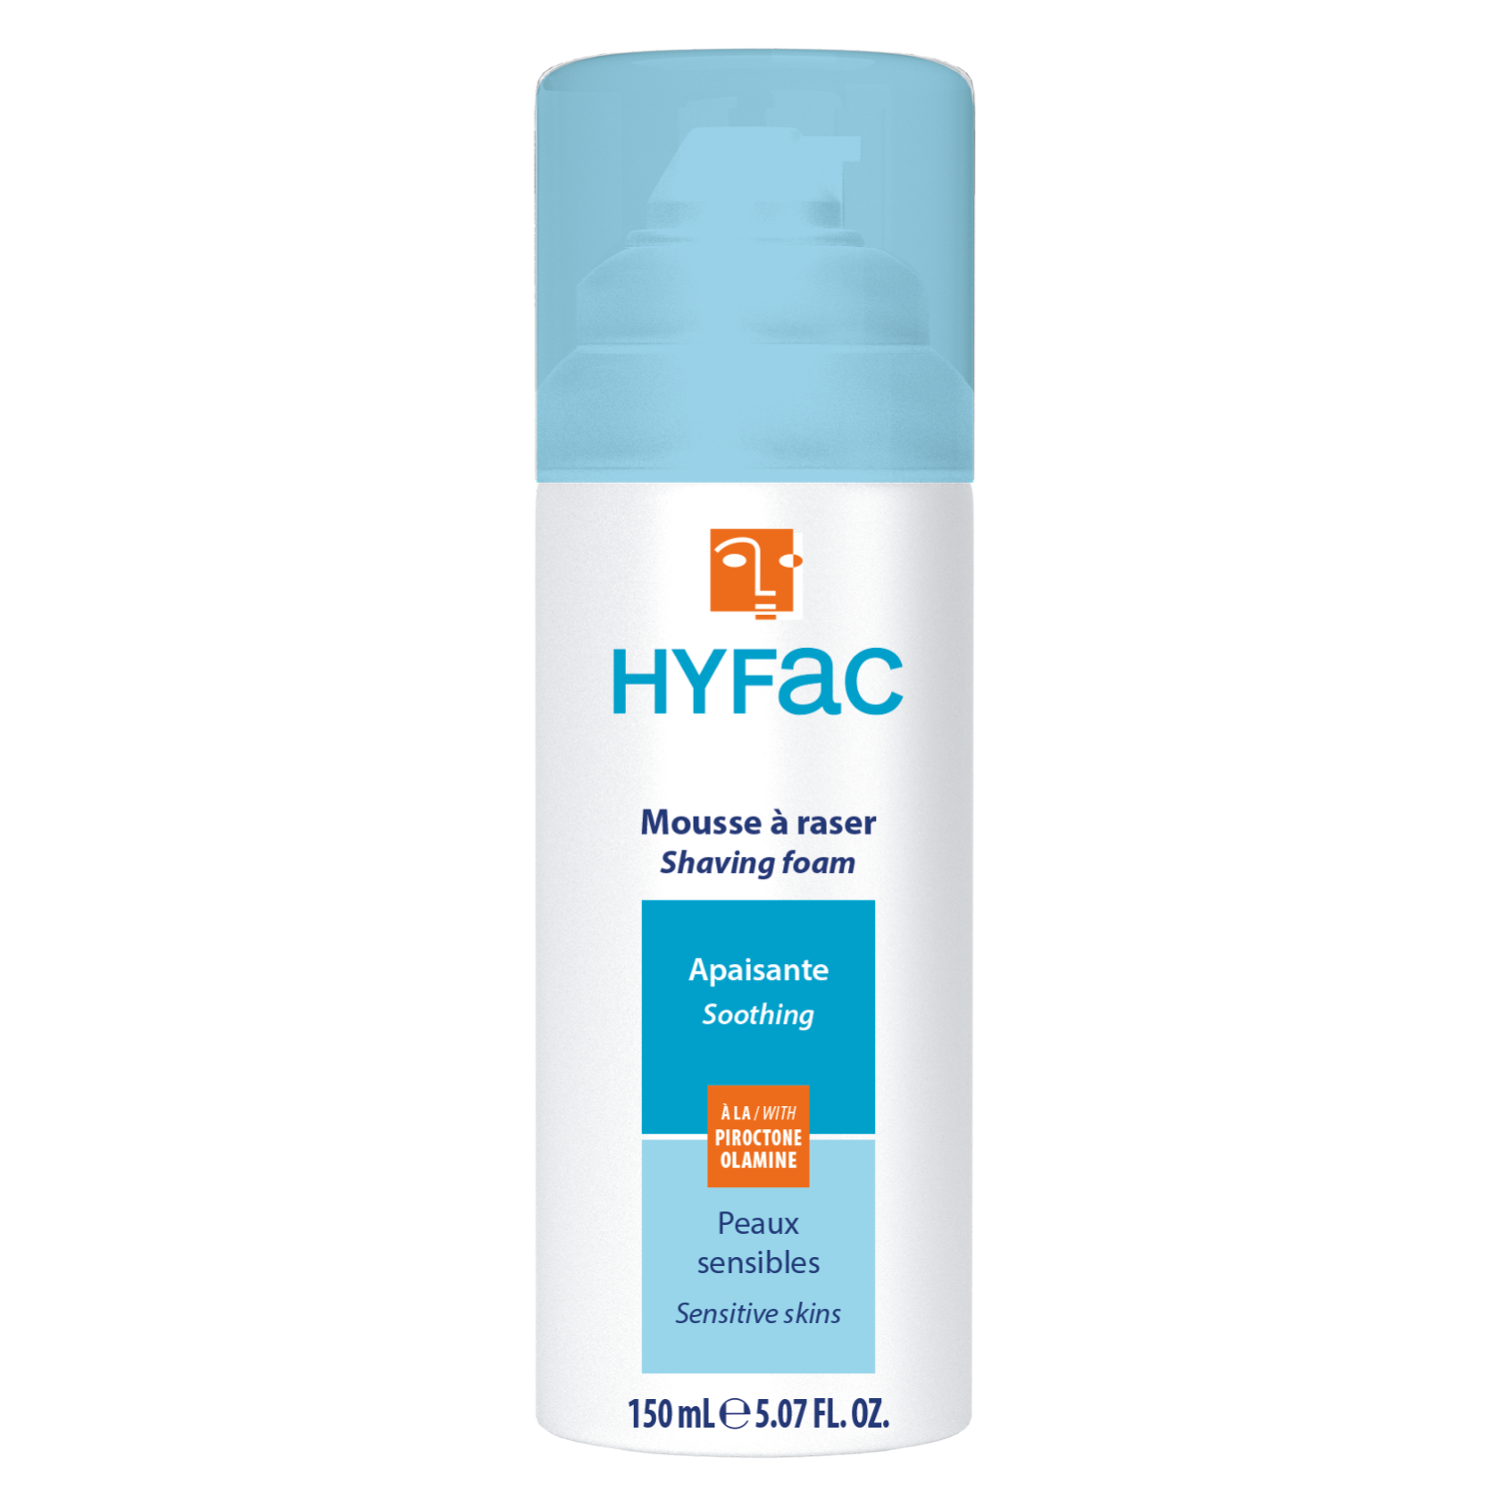 HYFAC Beruhigender Rasierschaum für empfindliche Haut